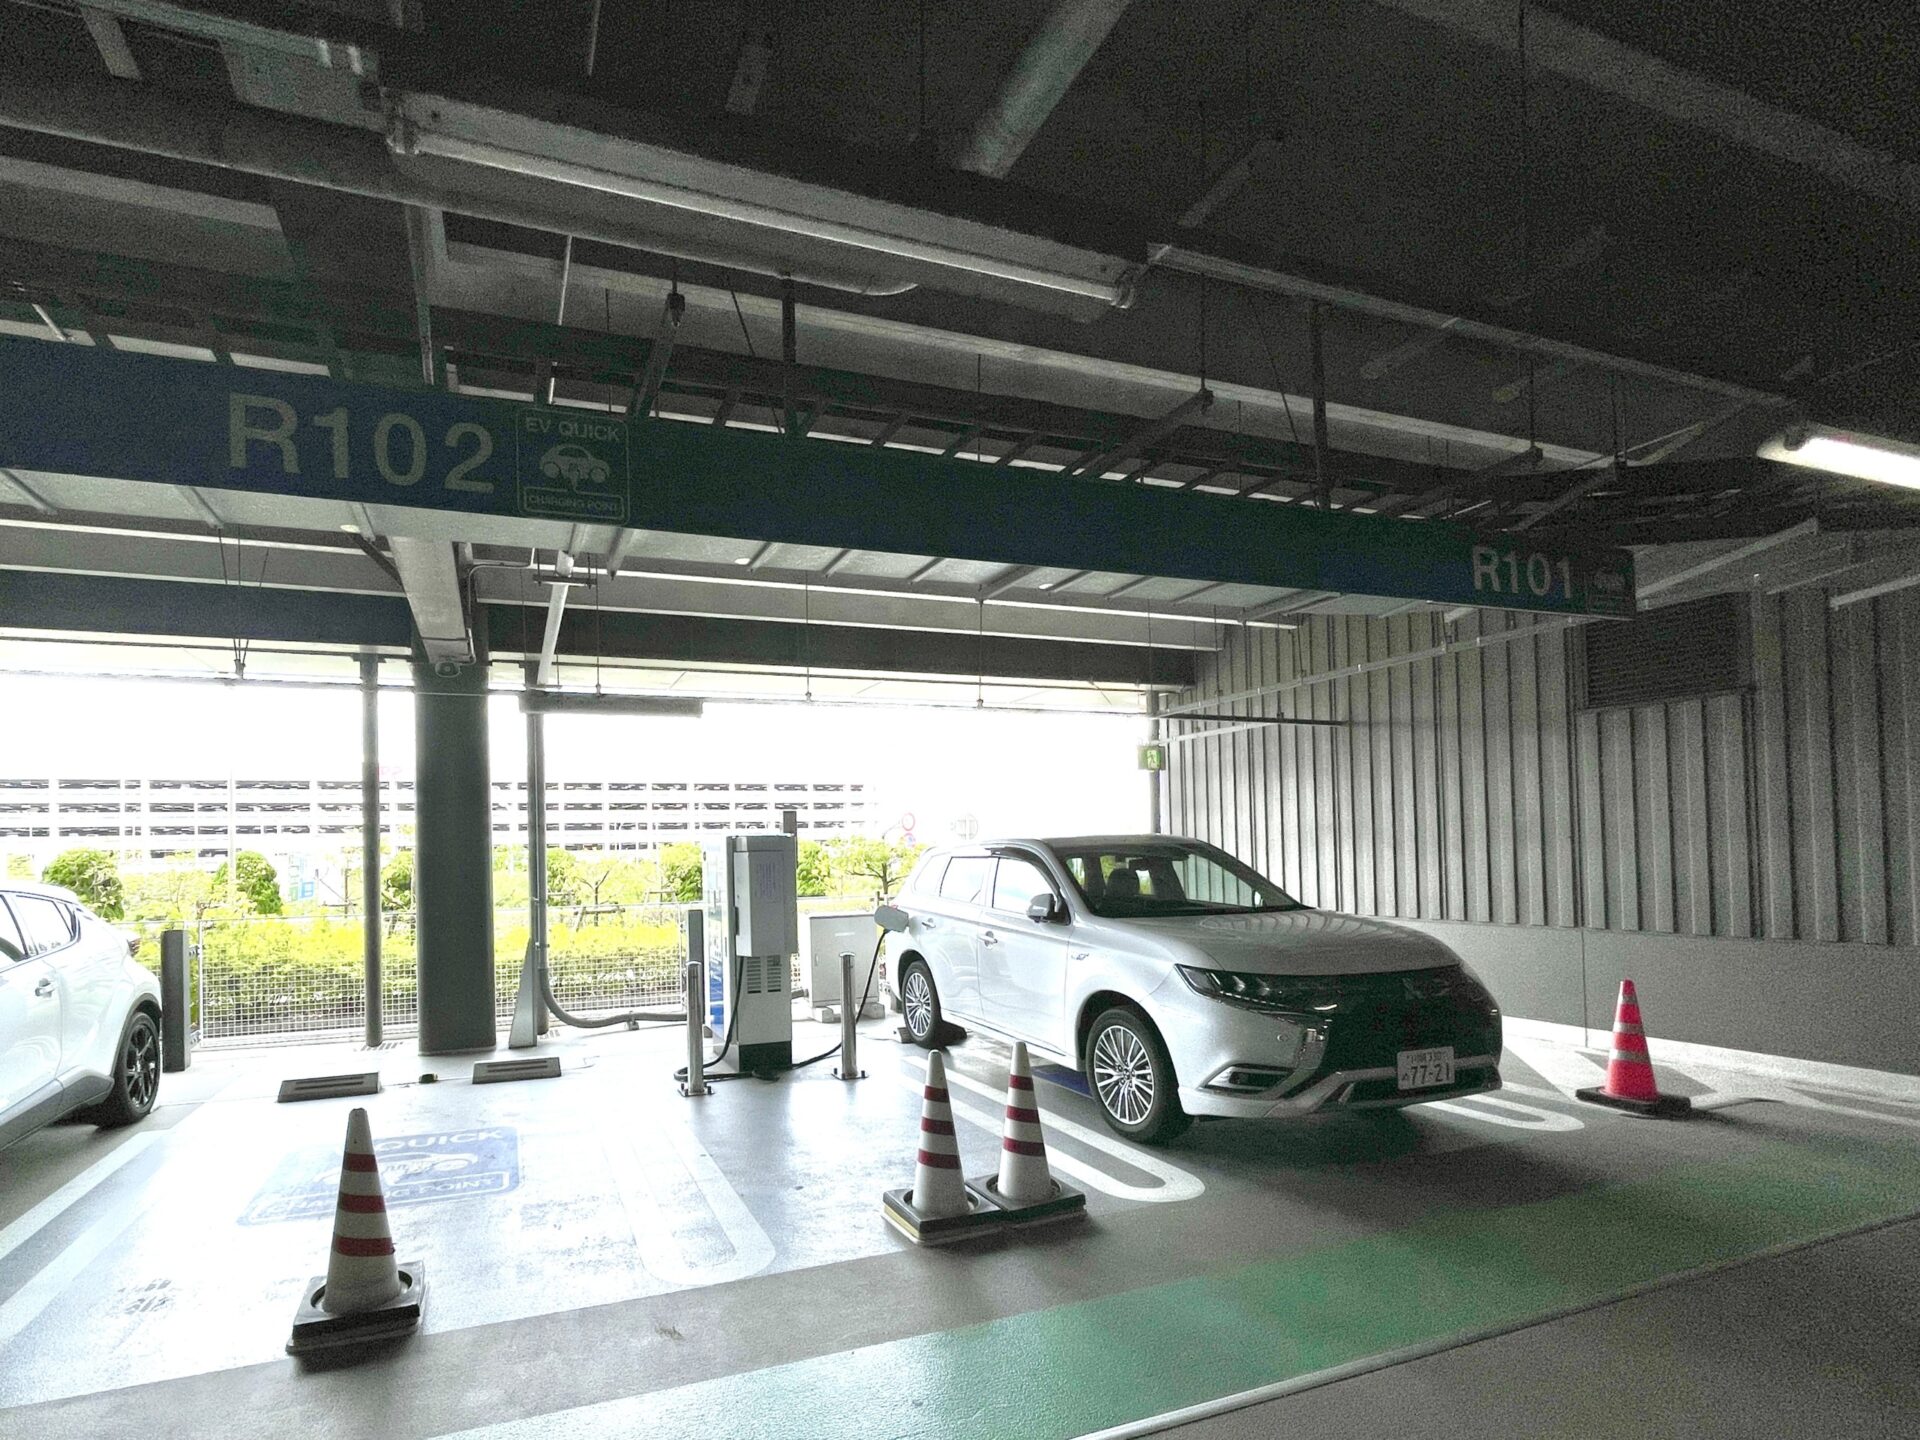 羽田空港第2ターミナル駐車場・P3・電気自動車充電スタンド・急速充電器